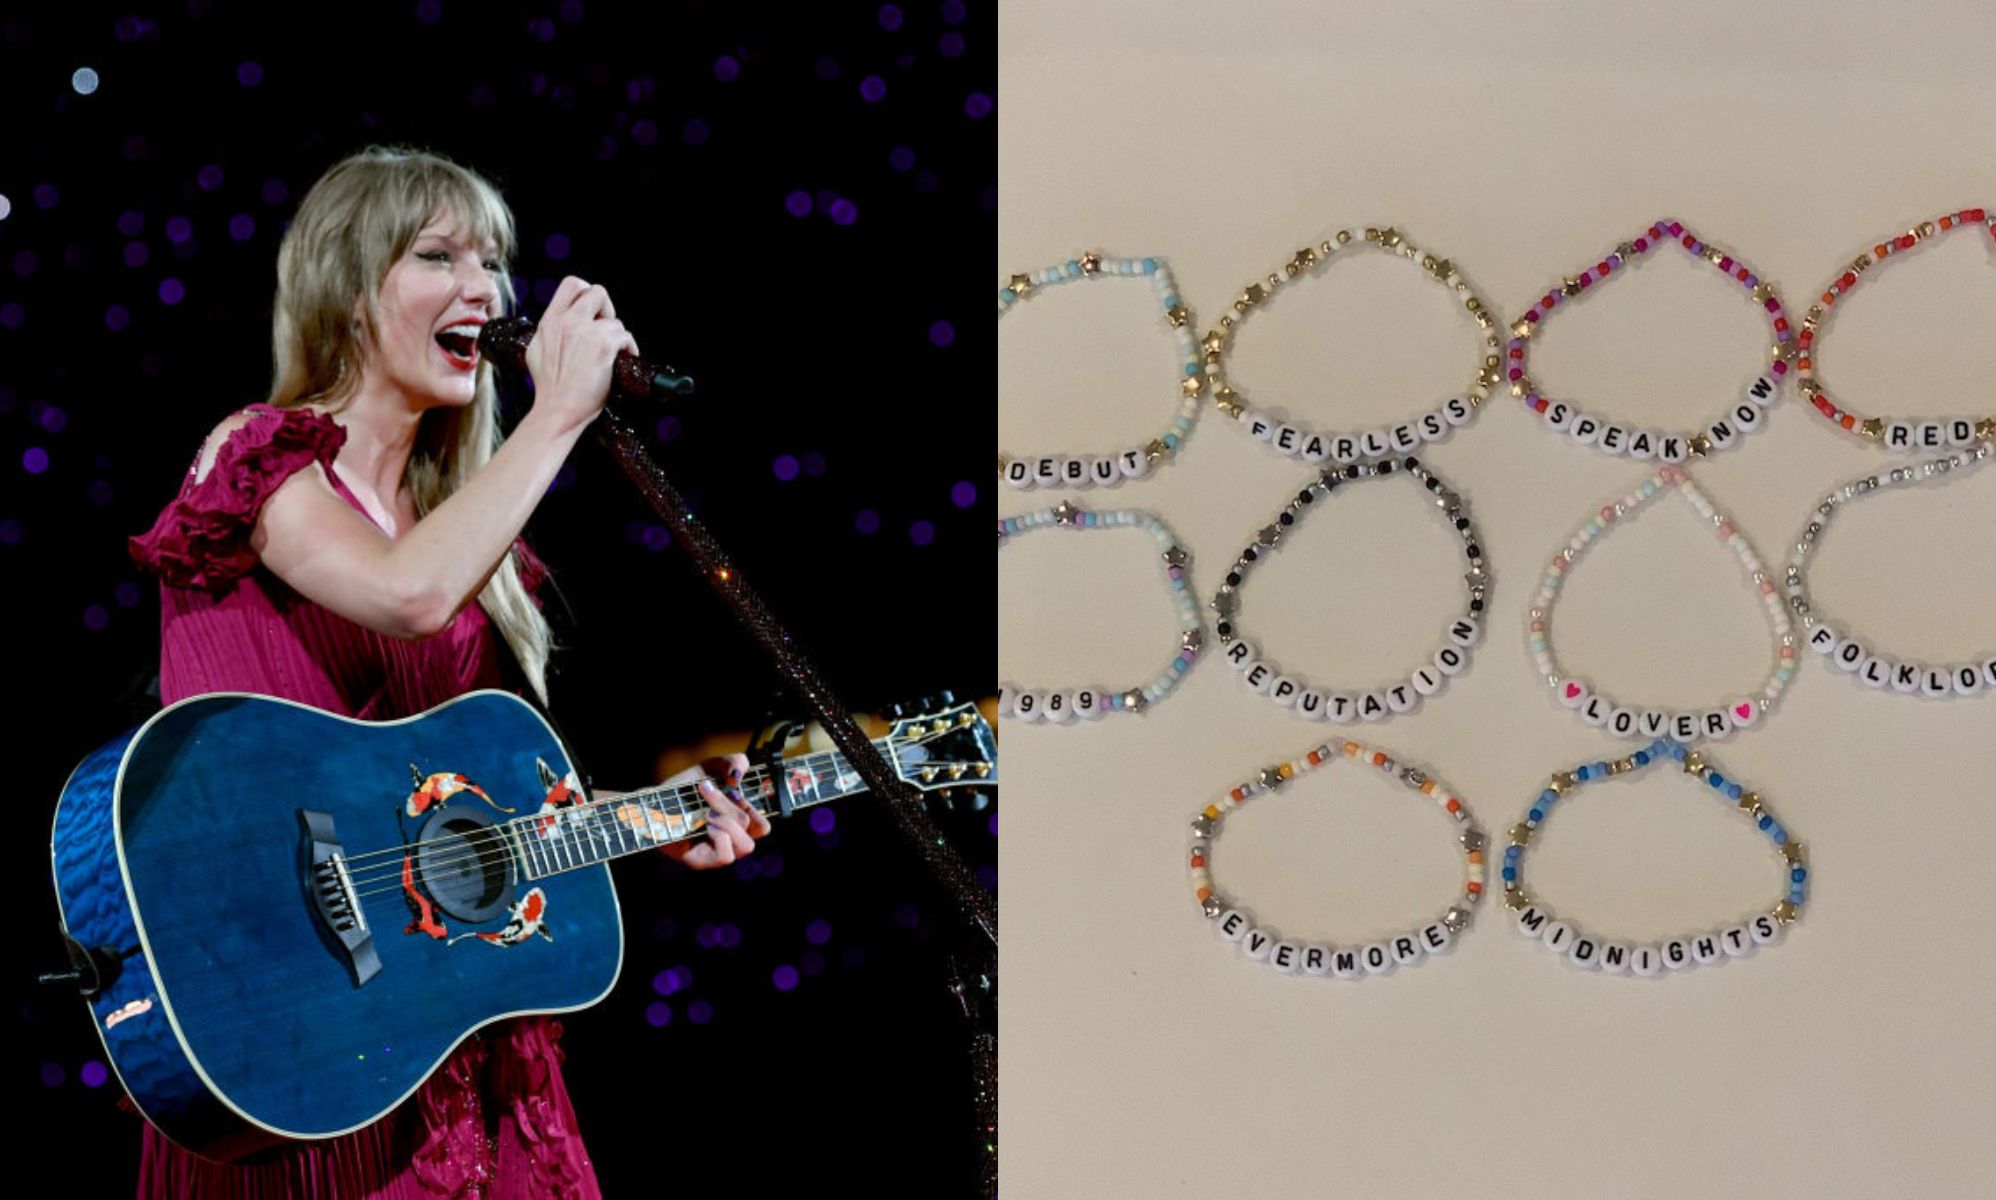 Taylor Swift Debut self titled album bracelet, beaded friendship bracelet   Friendship bracelets with beads, Taylor swift tour outfits, Taylor swift